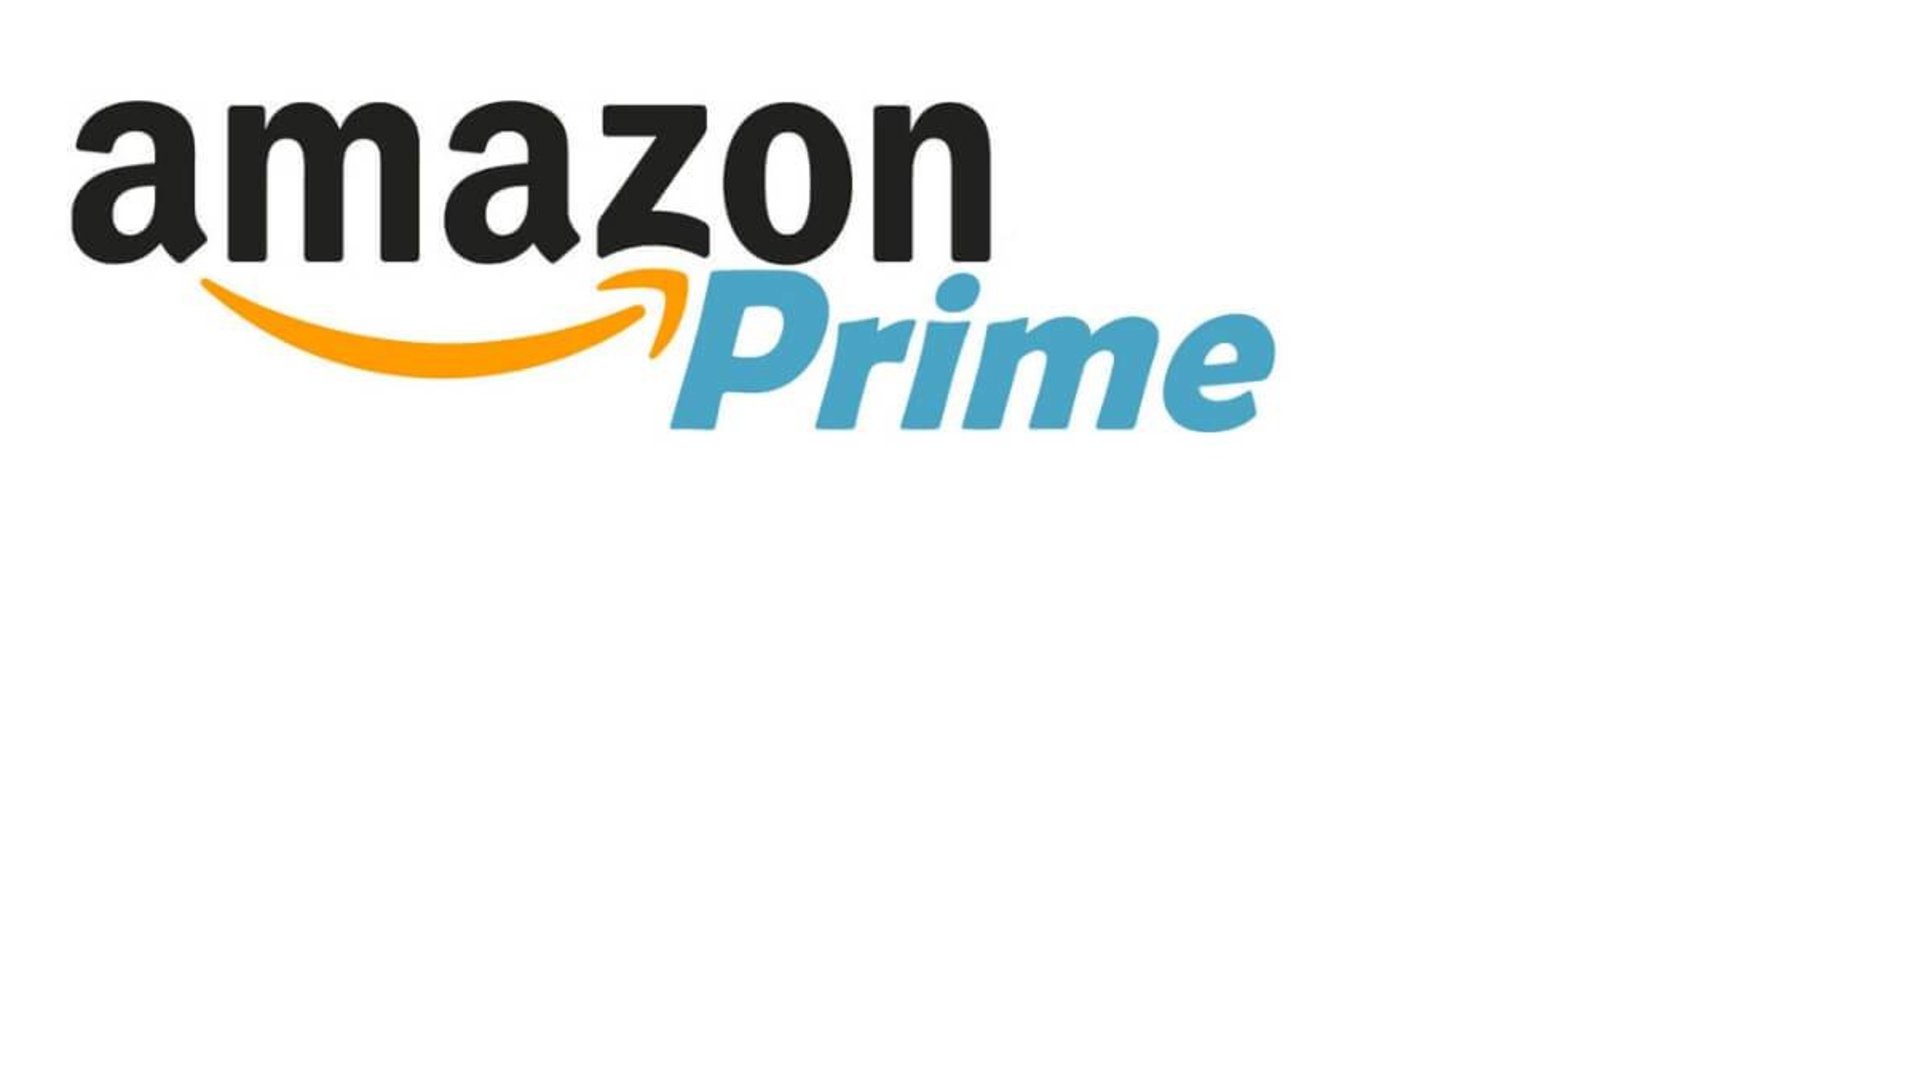 Amazon Preime